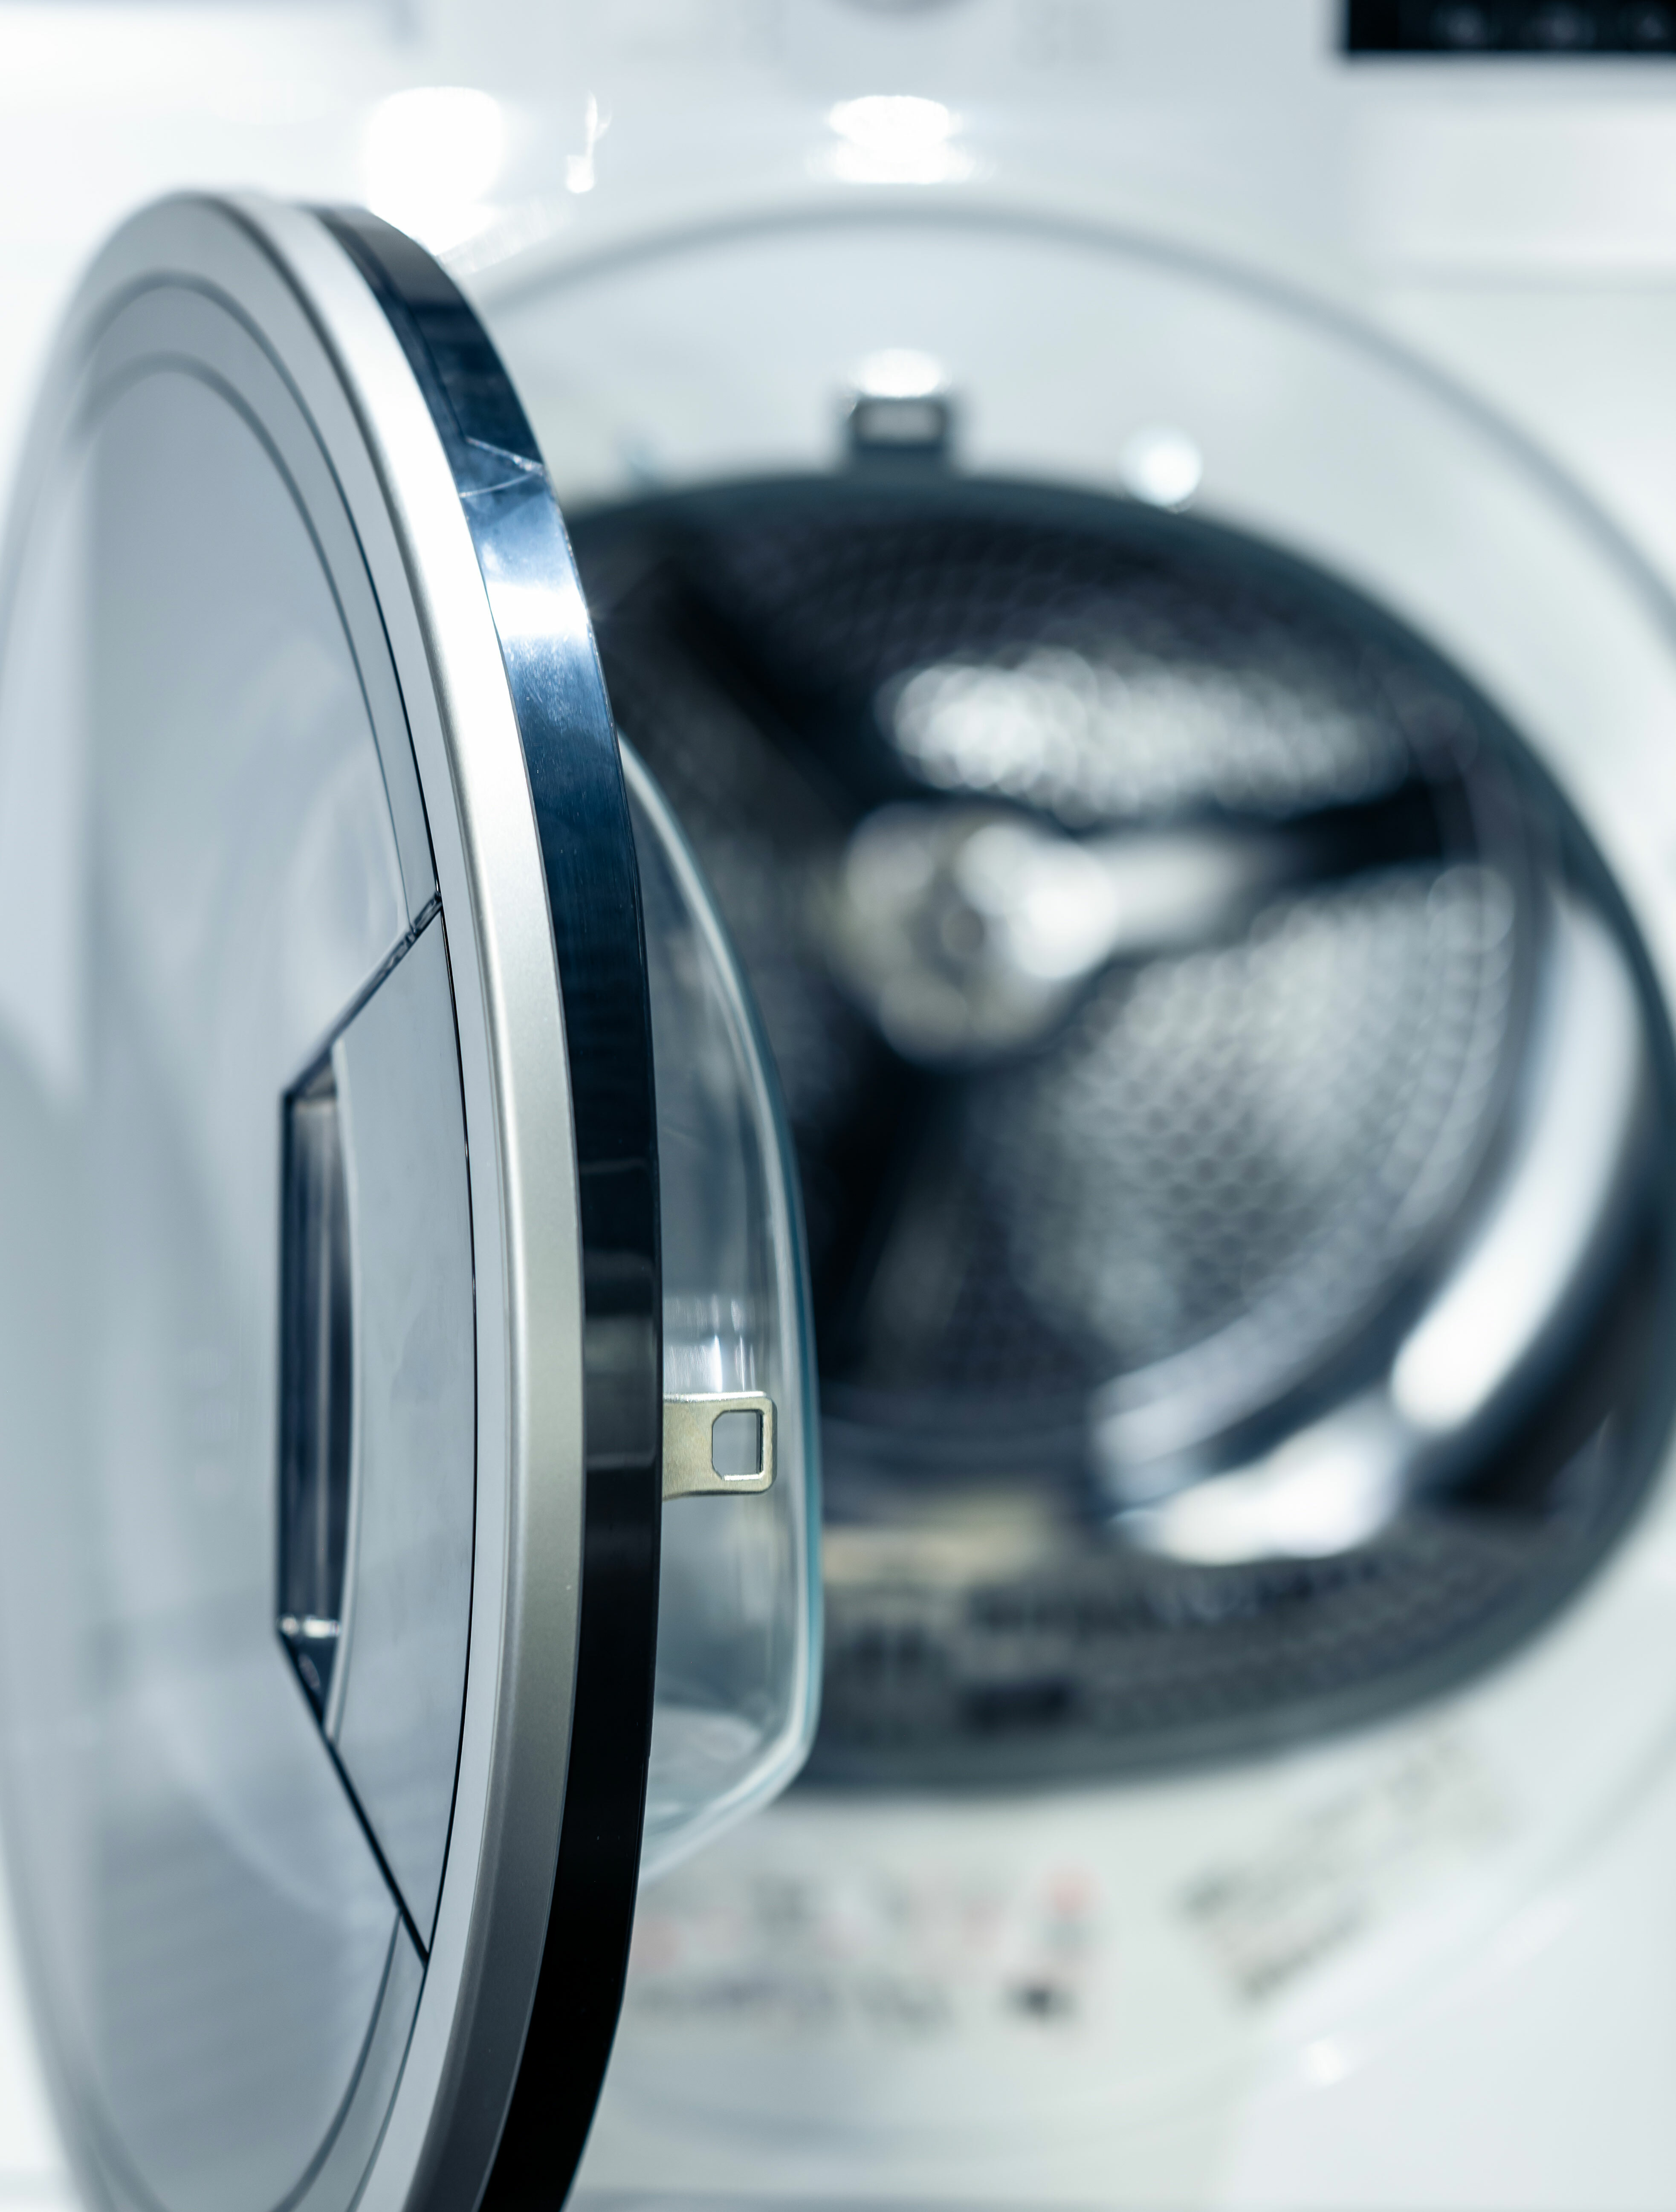 Comment nettoyer le joint du tambour de la machine à laver ? - M6